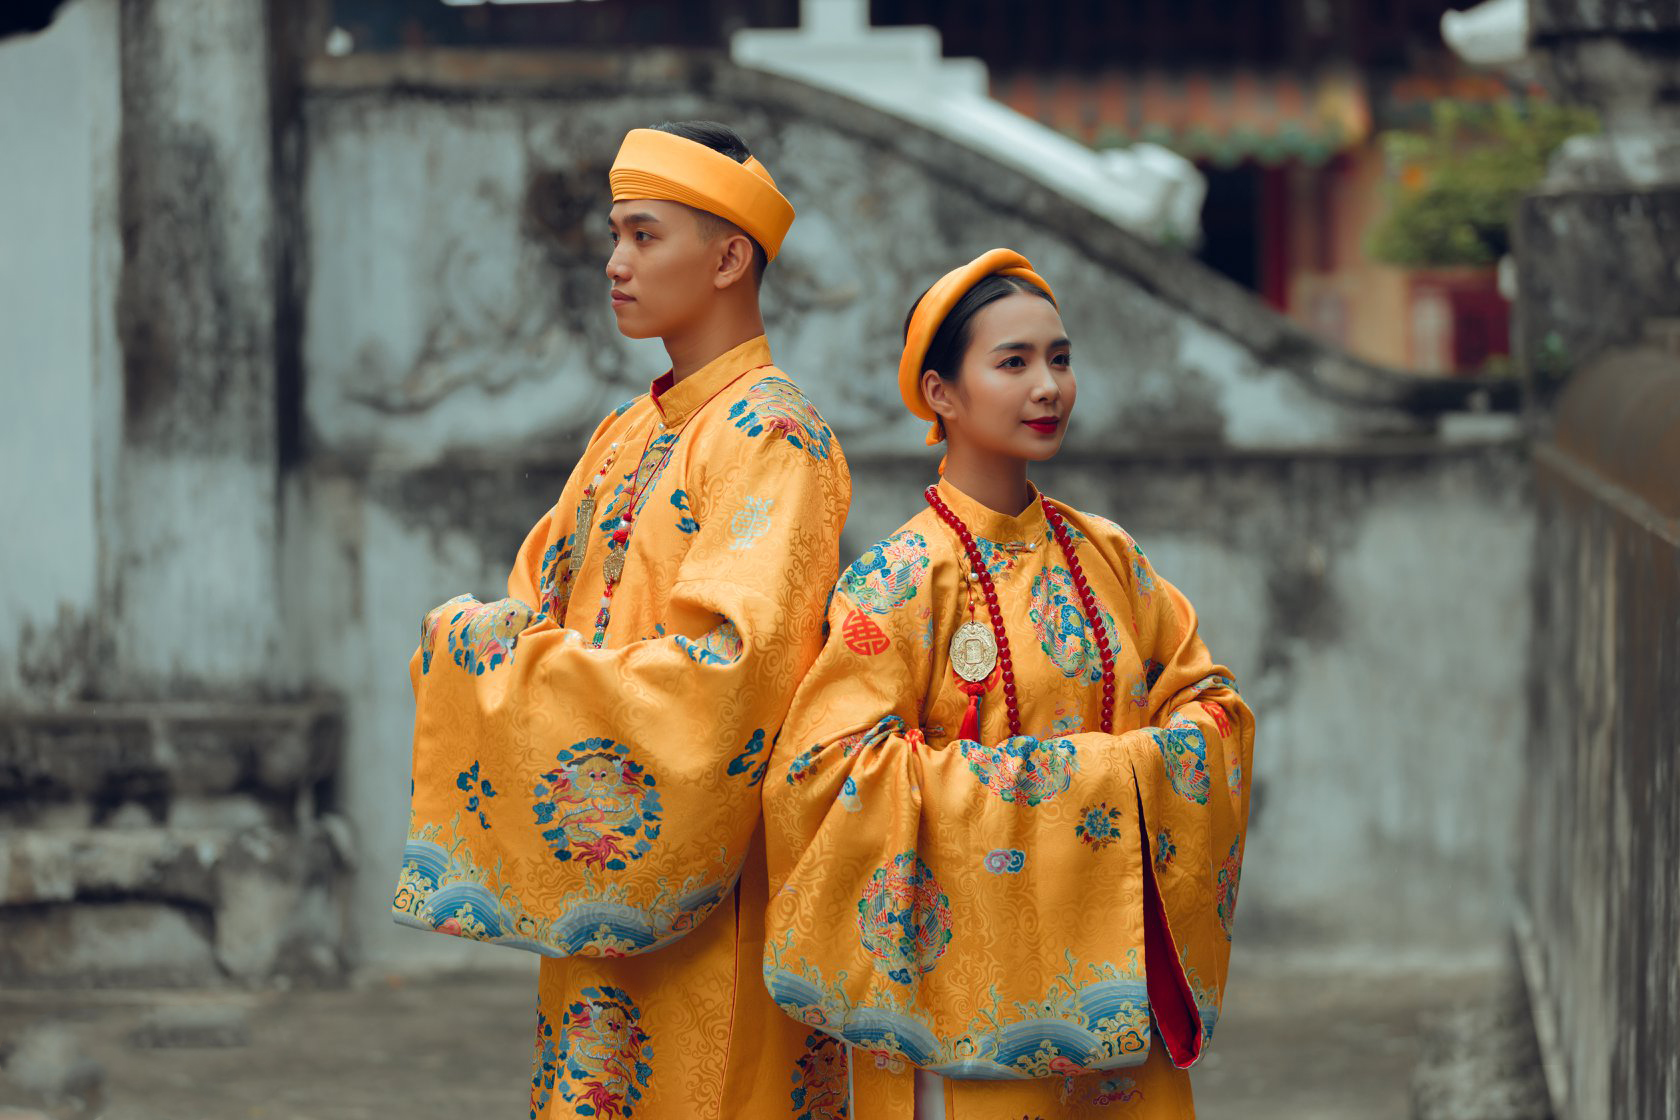 Nhóm học sinh cấp 3 tìm về nét đẹp truyền thống, diện nguyên dàn cổ phục Việt chụp ảnh kỷ yếu, nhanh chóng thành tạo "hot trend" trên mạng xã hội - Ảnh 19.